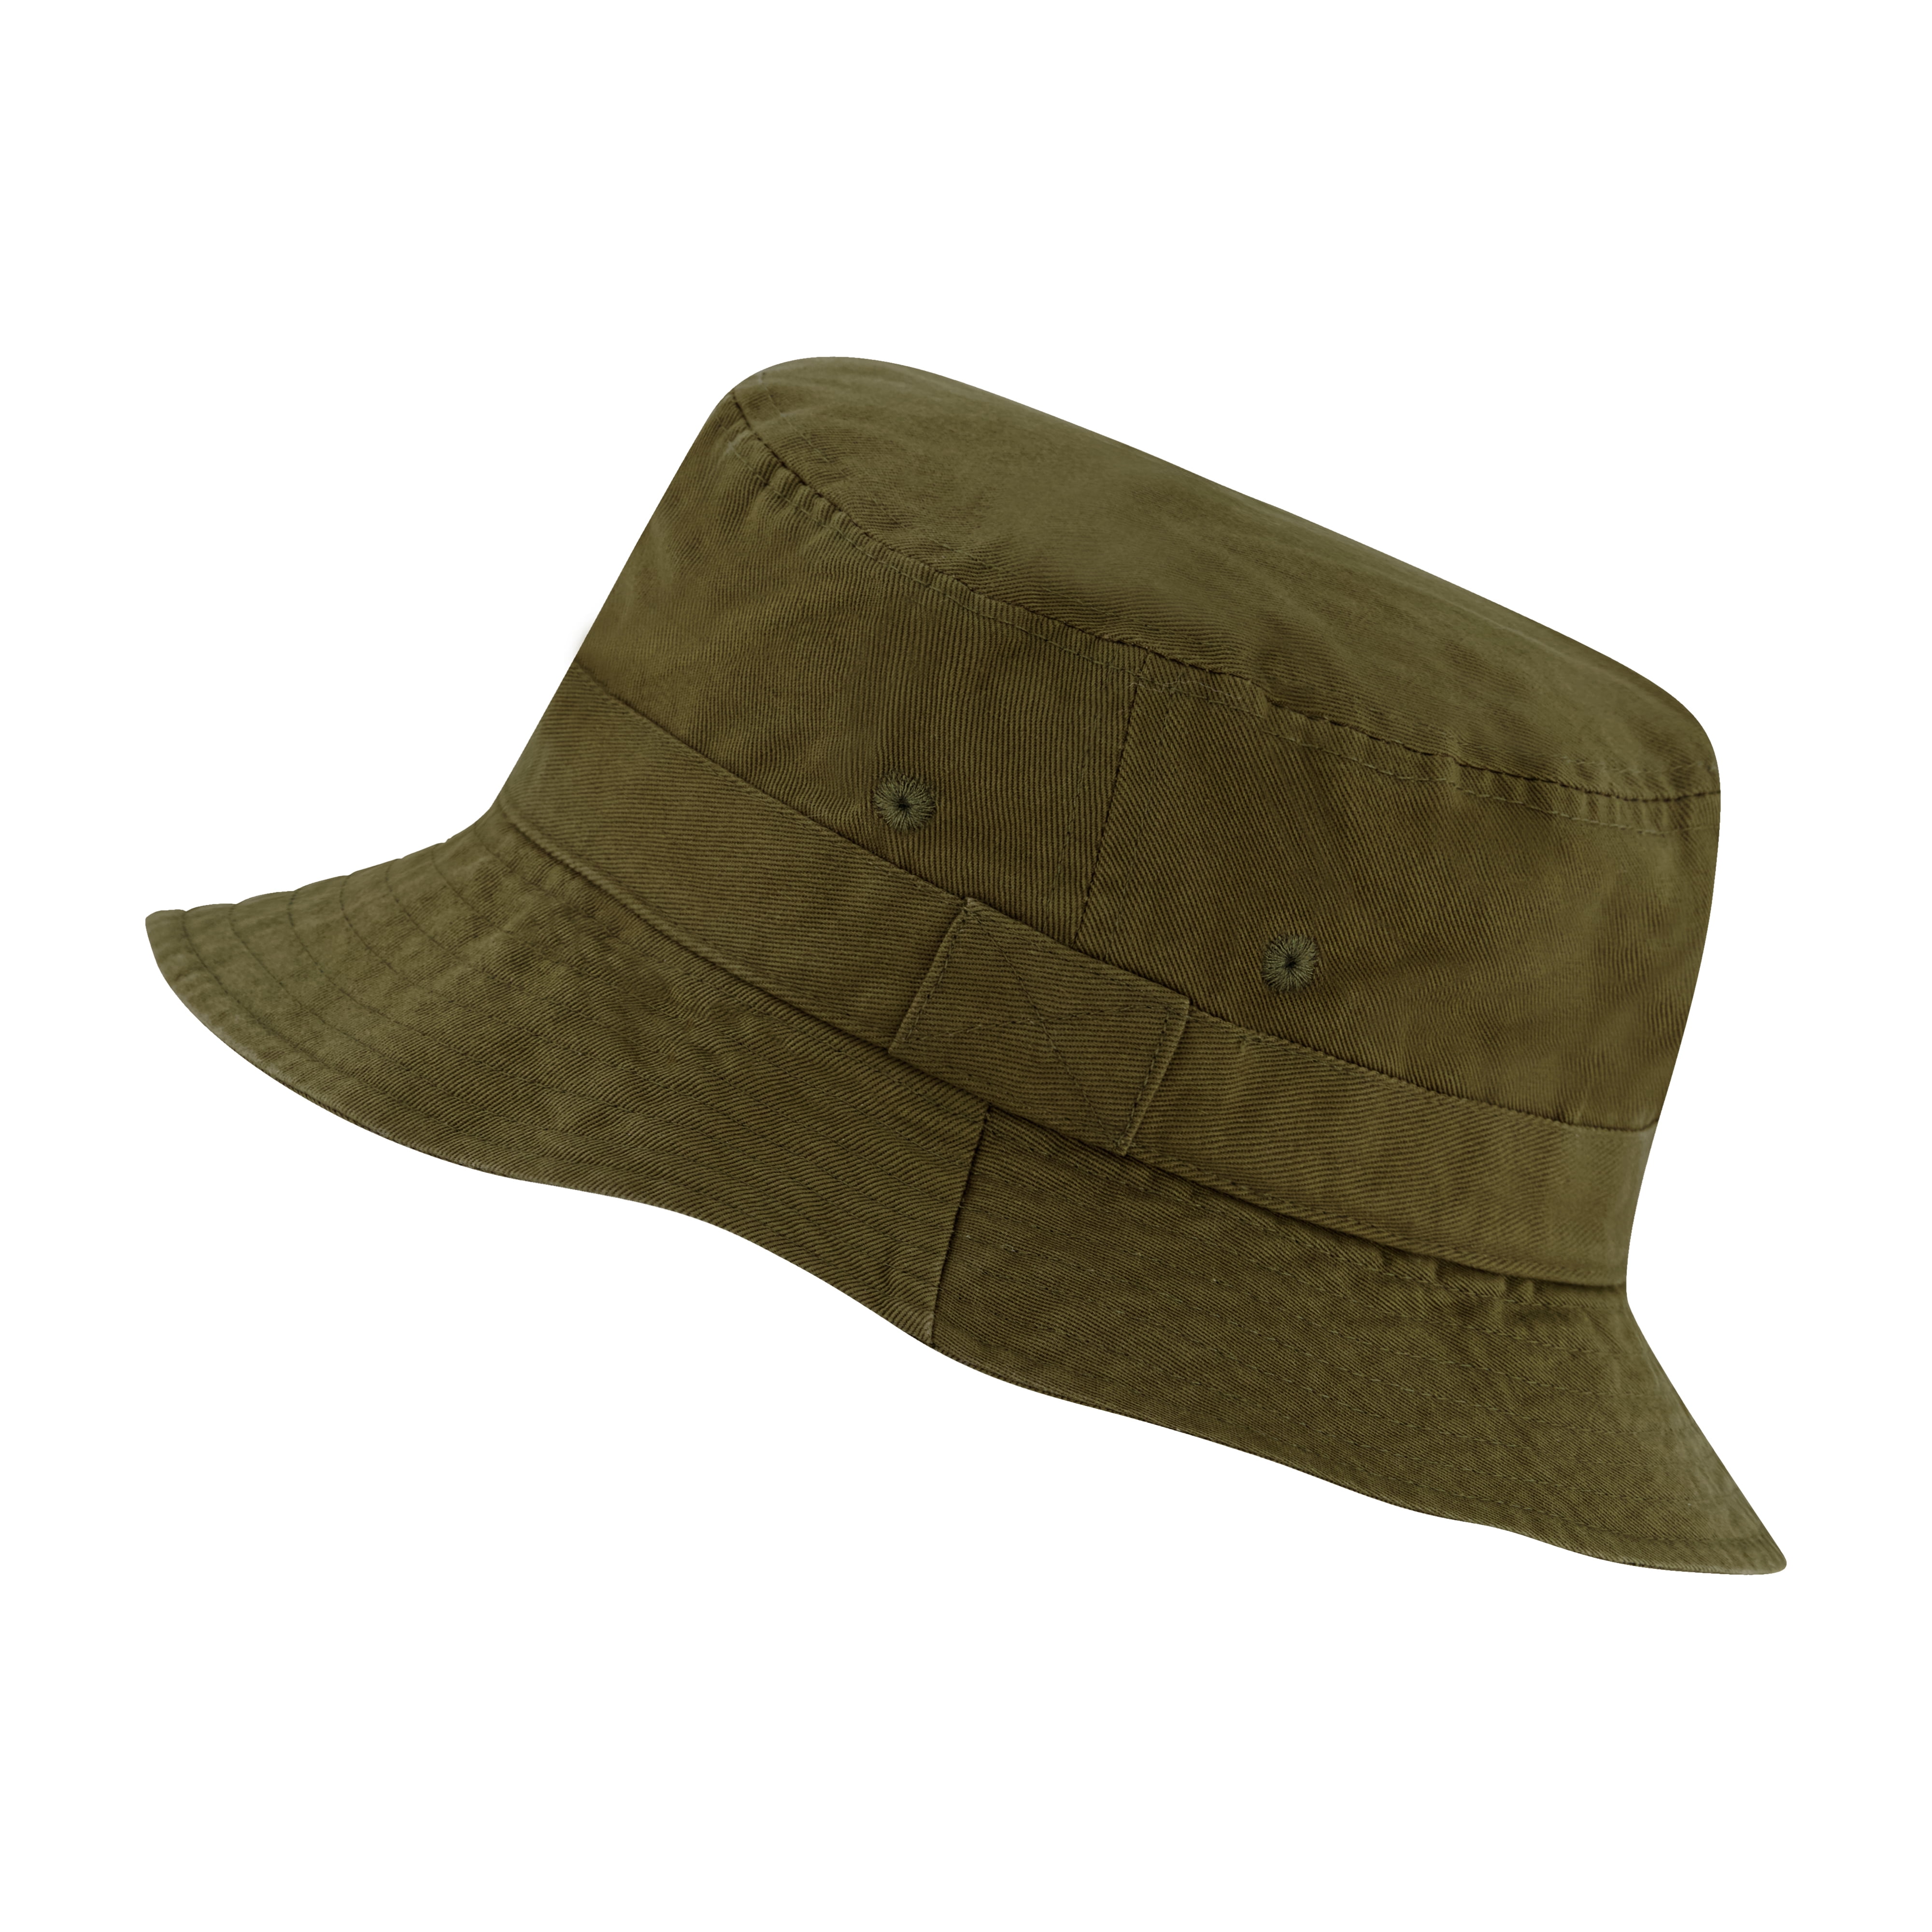 Market & Layne Unisex Black Bucket Hat for Adult & Teens - Medium